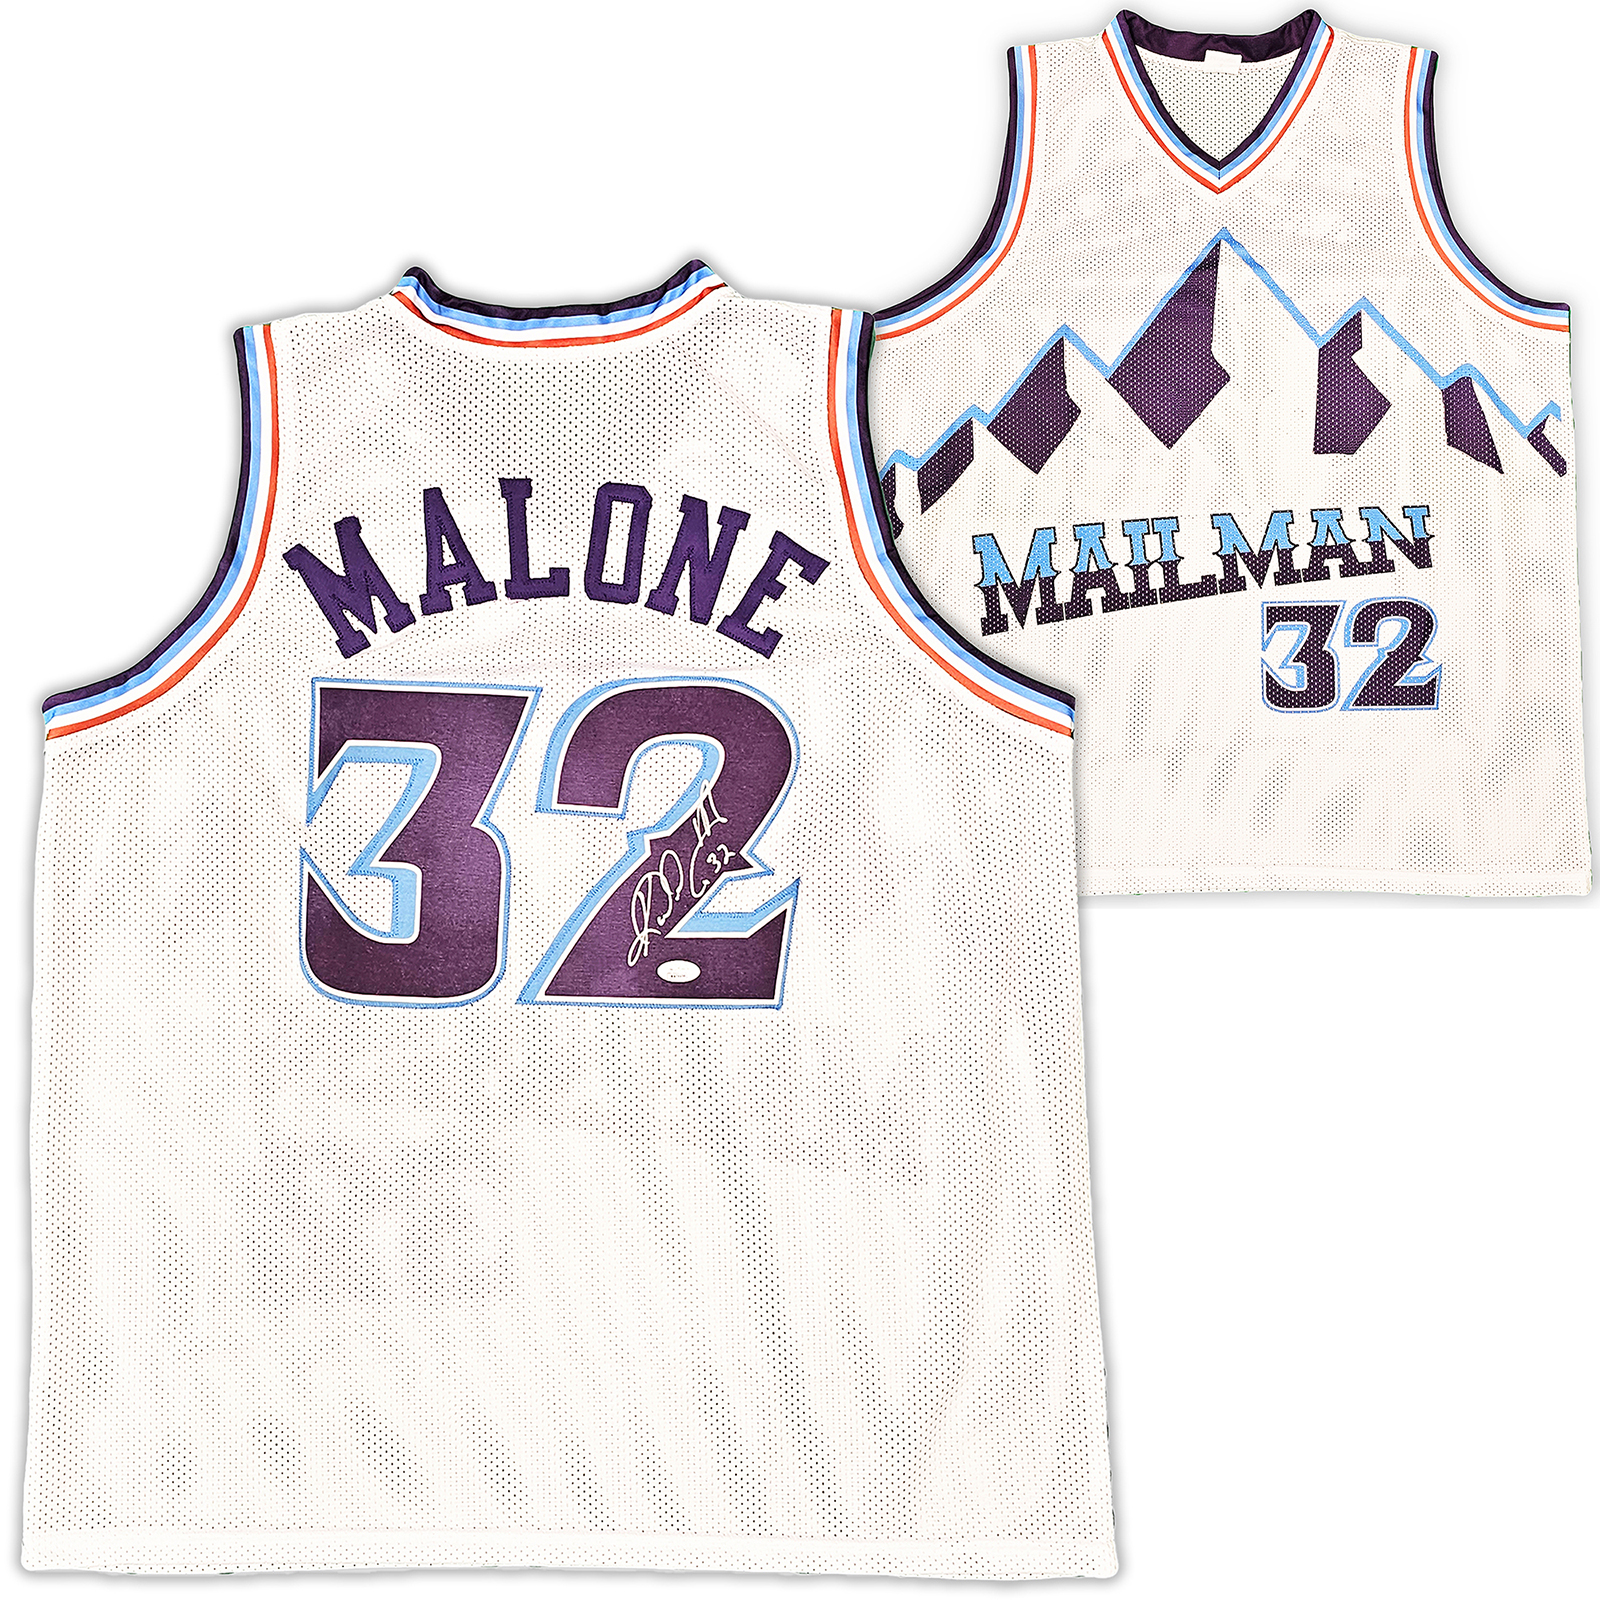 Karl Malone Autographed Utah Mitchell & Ness White Basketball Jersey - BAS